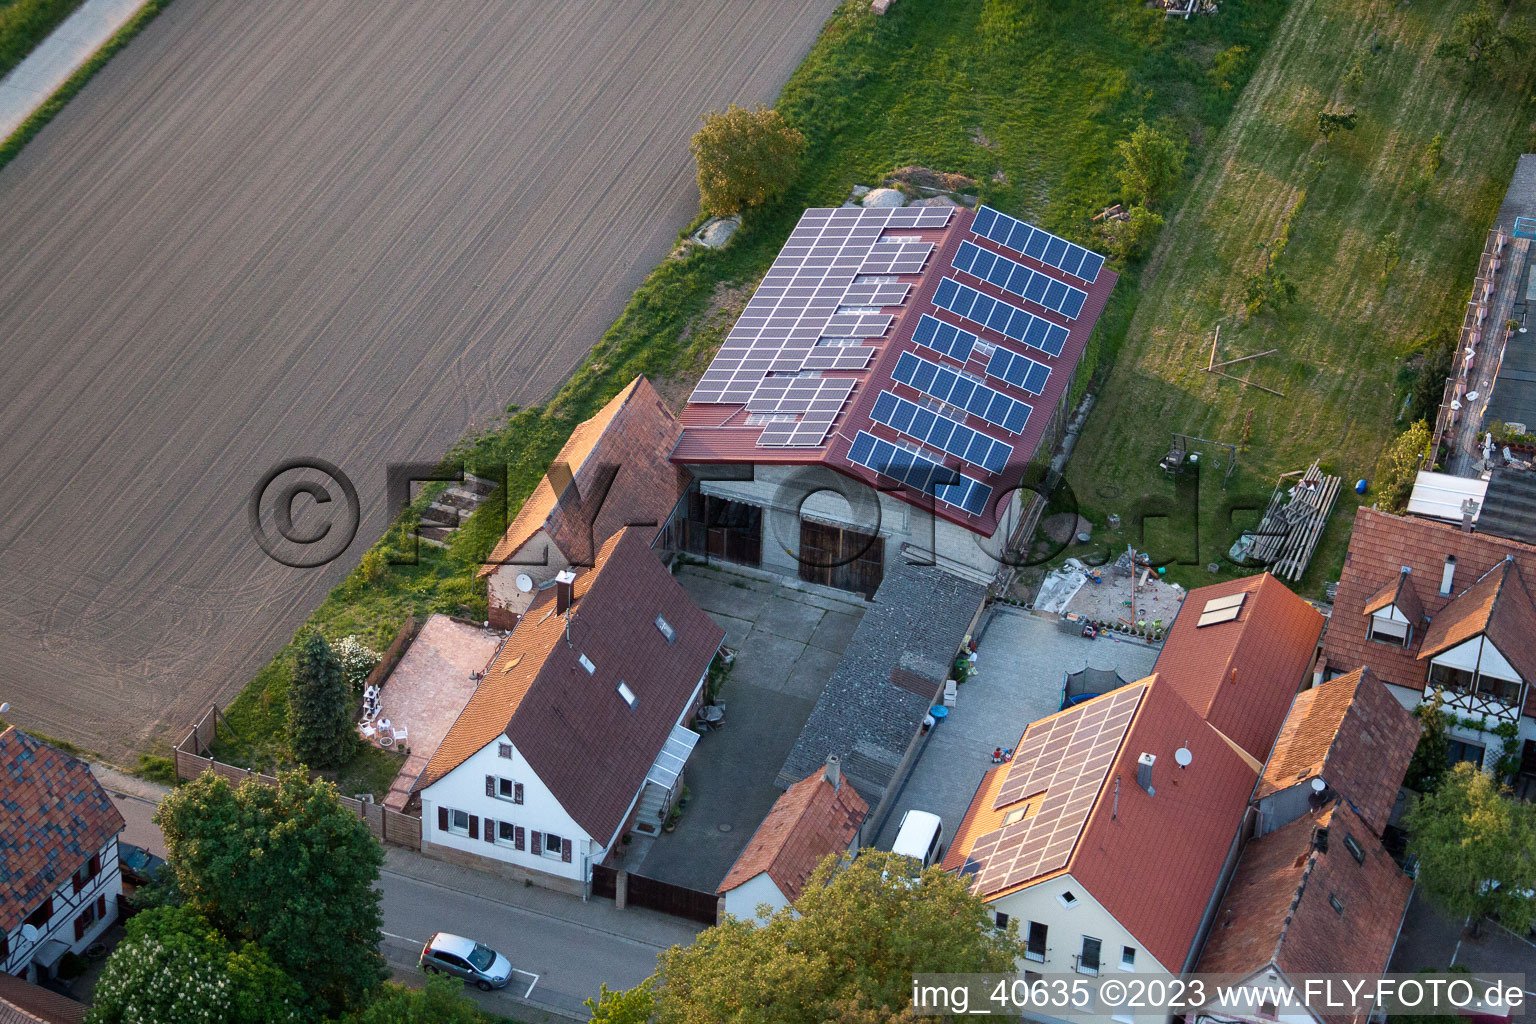 Minderslachen, Brehmstr in Kandel im Bundesland Rheinland-Pfalz, Deutschland von der Drohne aus gesehen